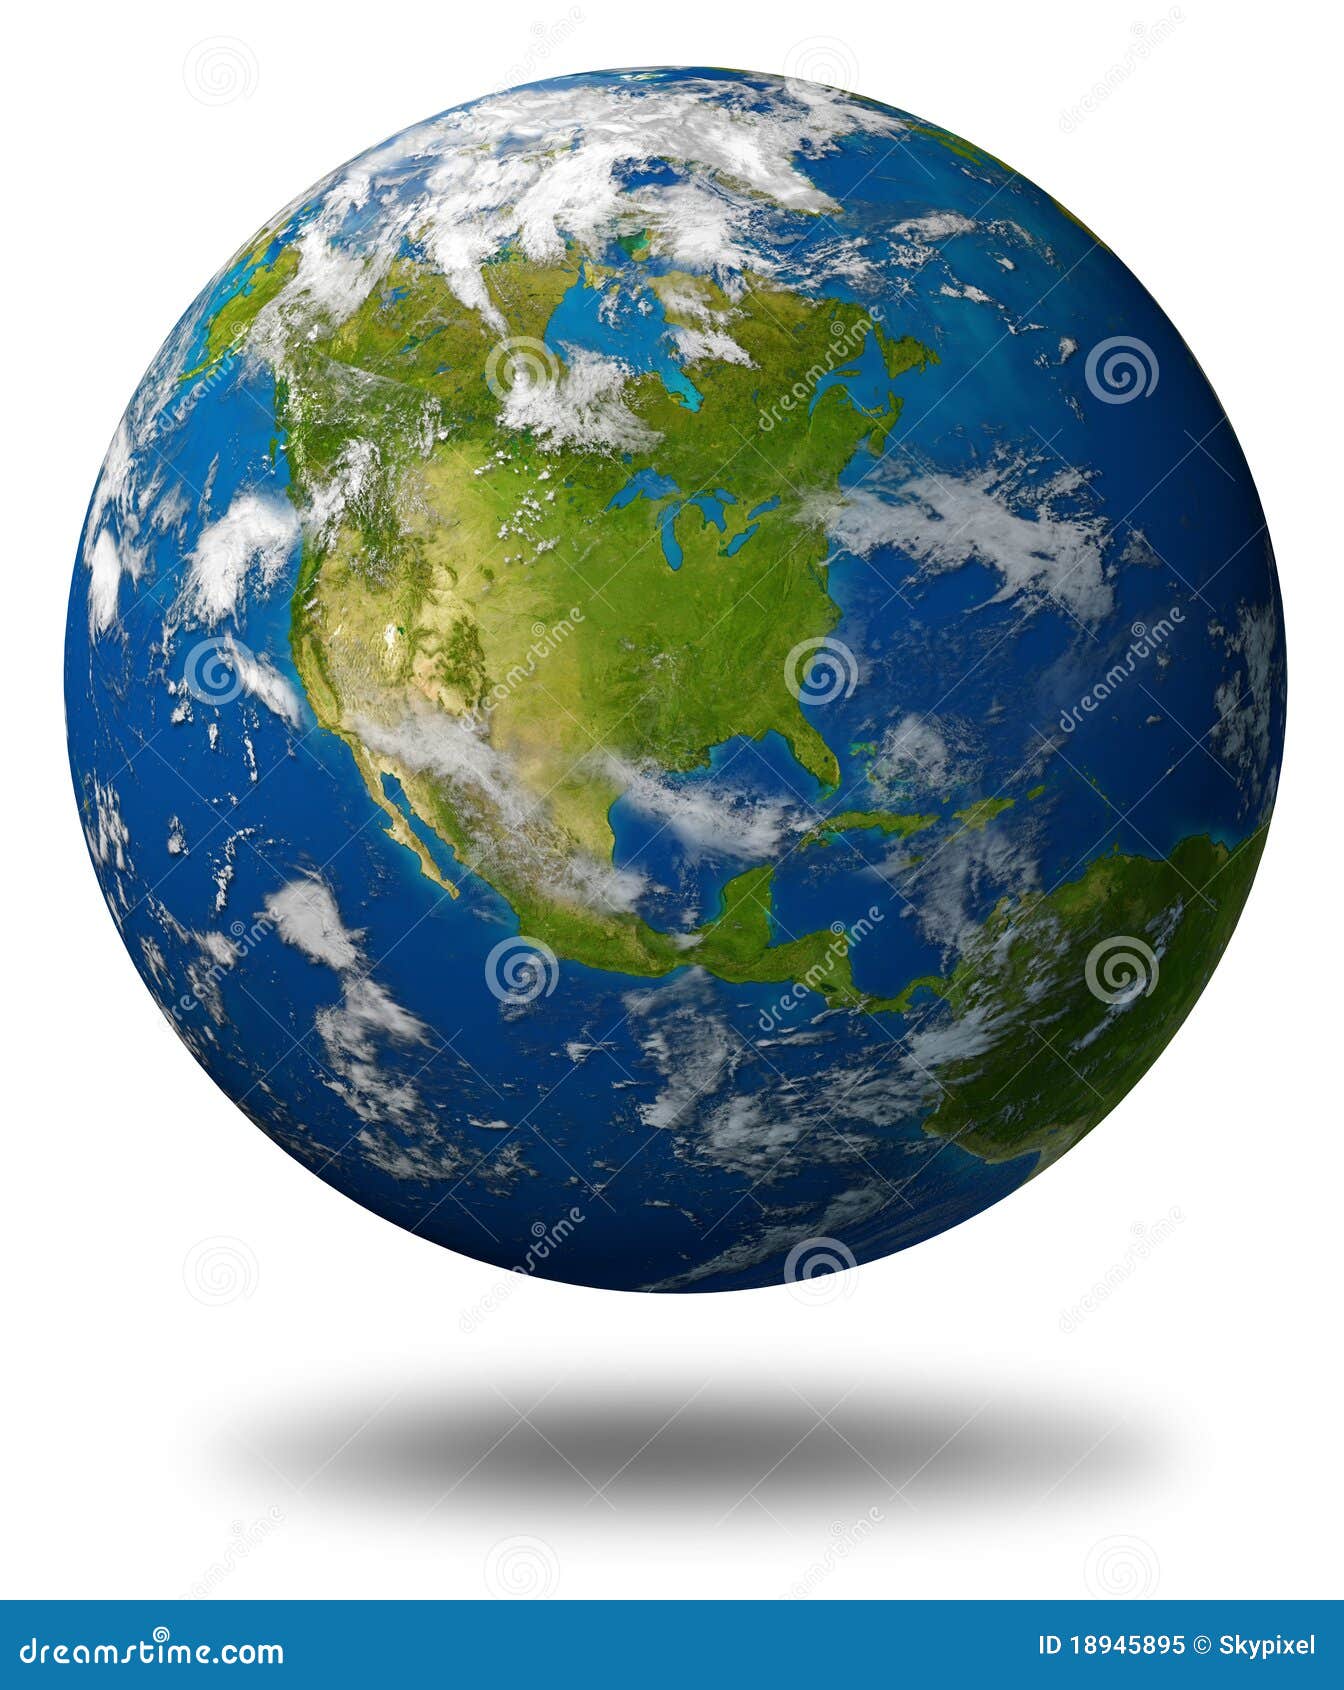 earth globe of north america